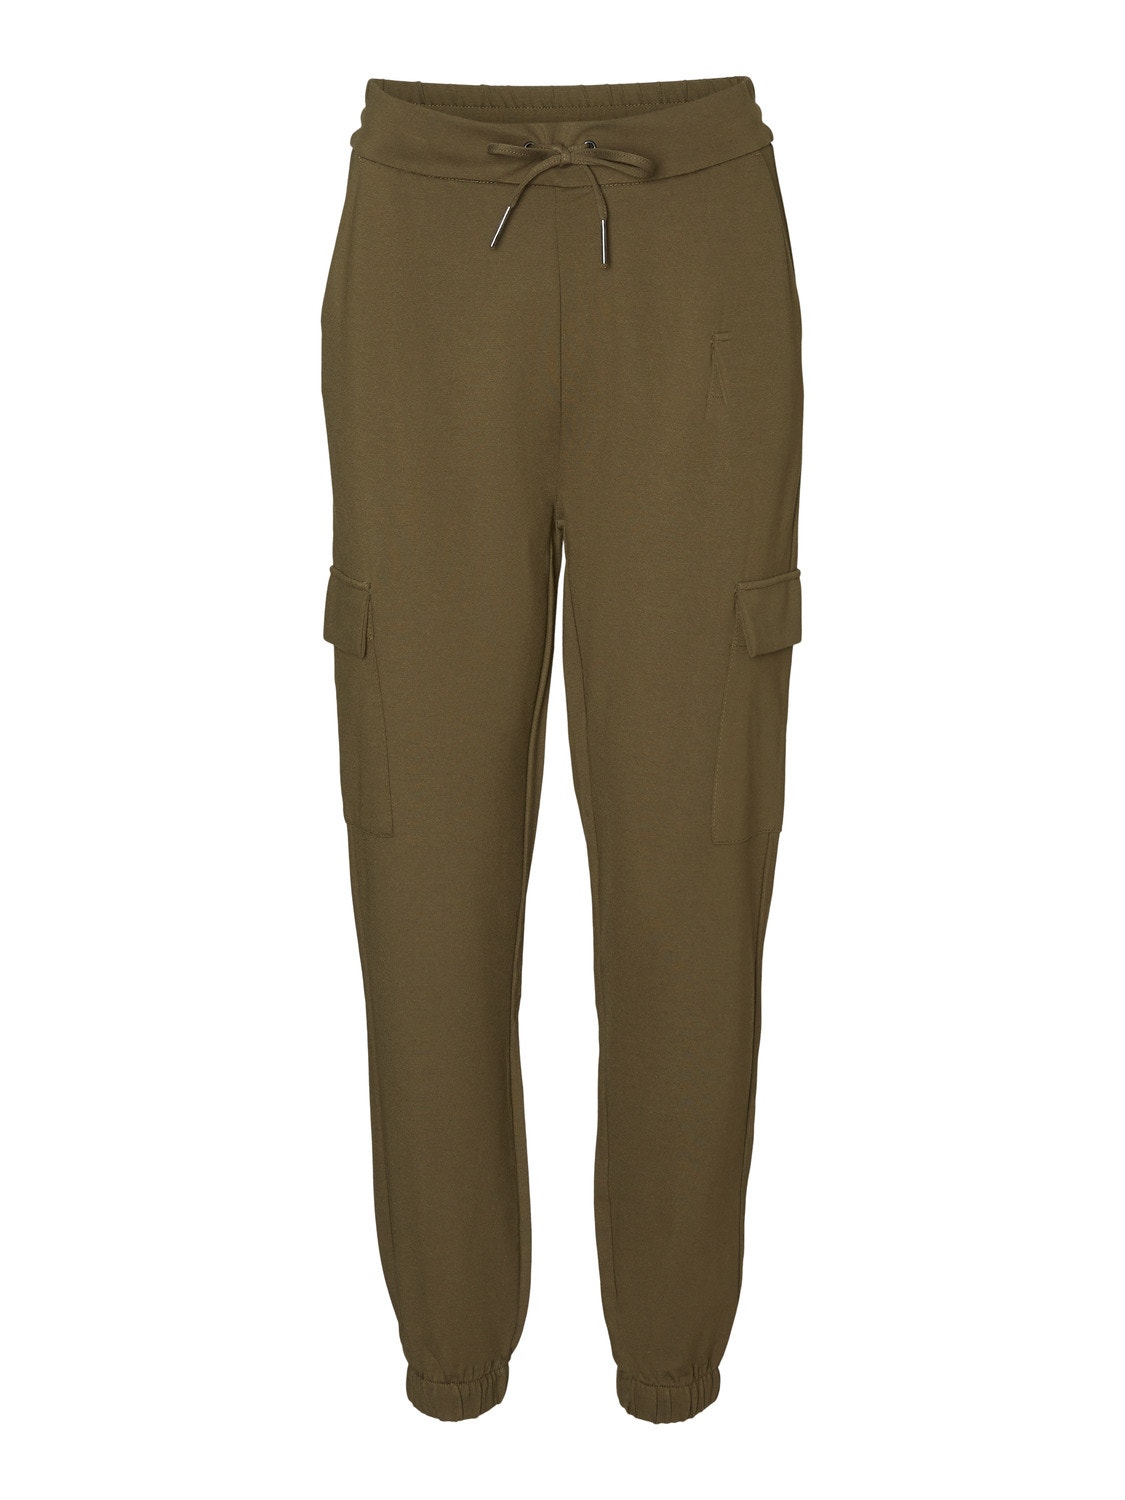 Vero Moda VMEVA Średnia talia Spodnie -Ivy Green - 10235025